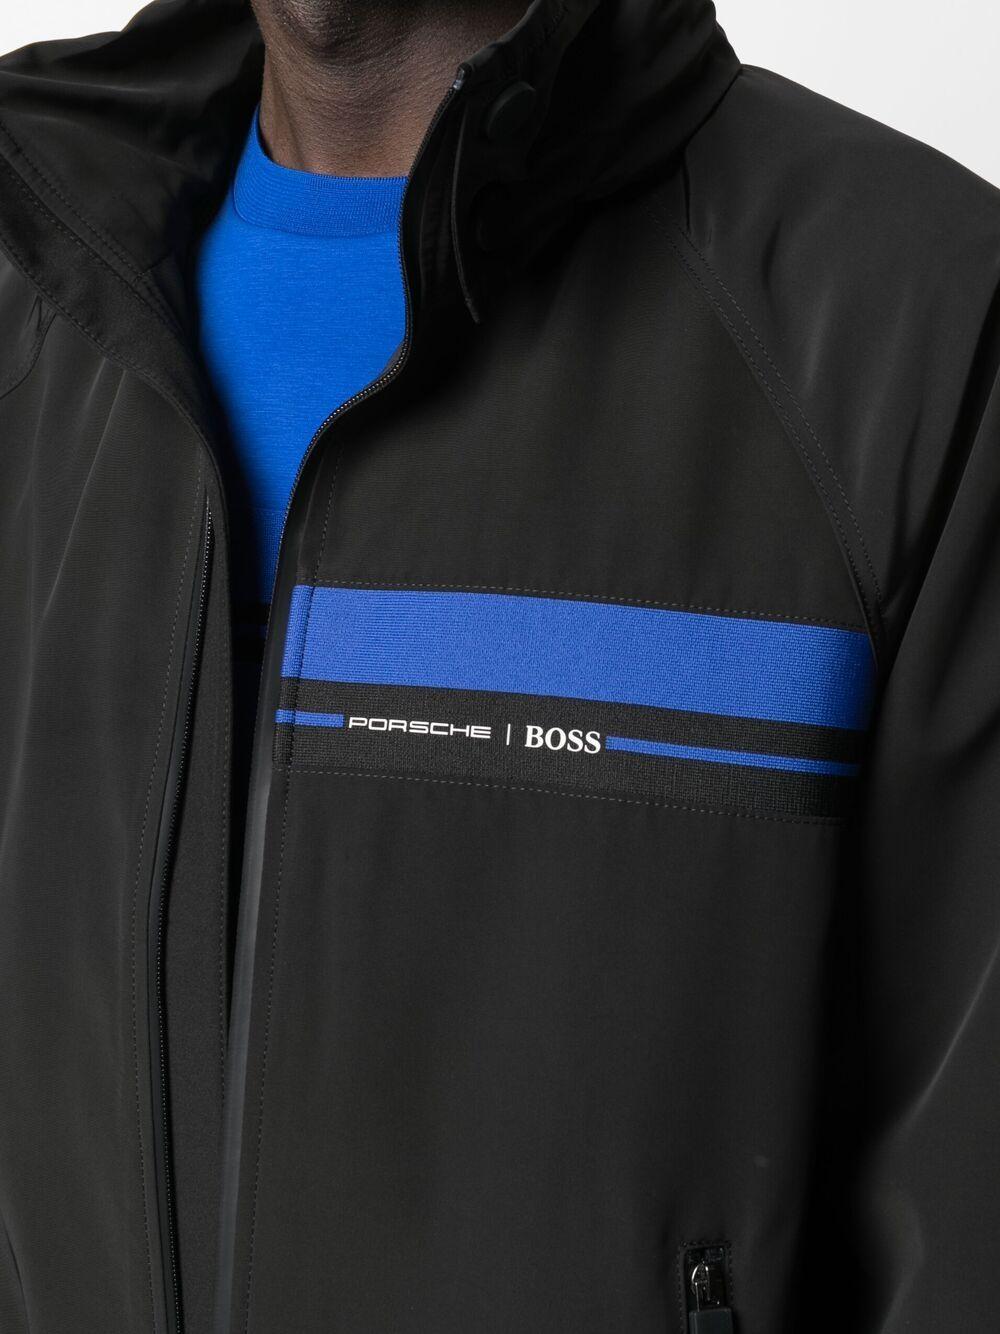 BOSS by HUGO BOSS X Porsche Zipped Jacket in Black for Men | Lyst